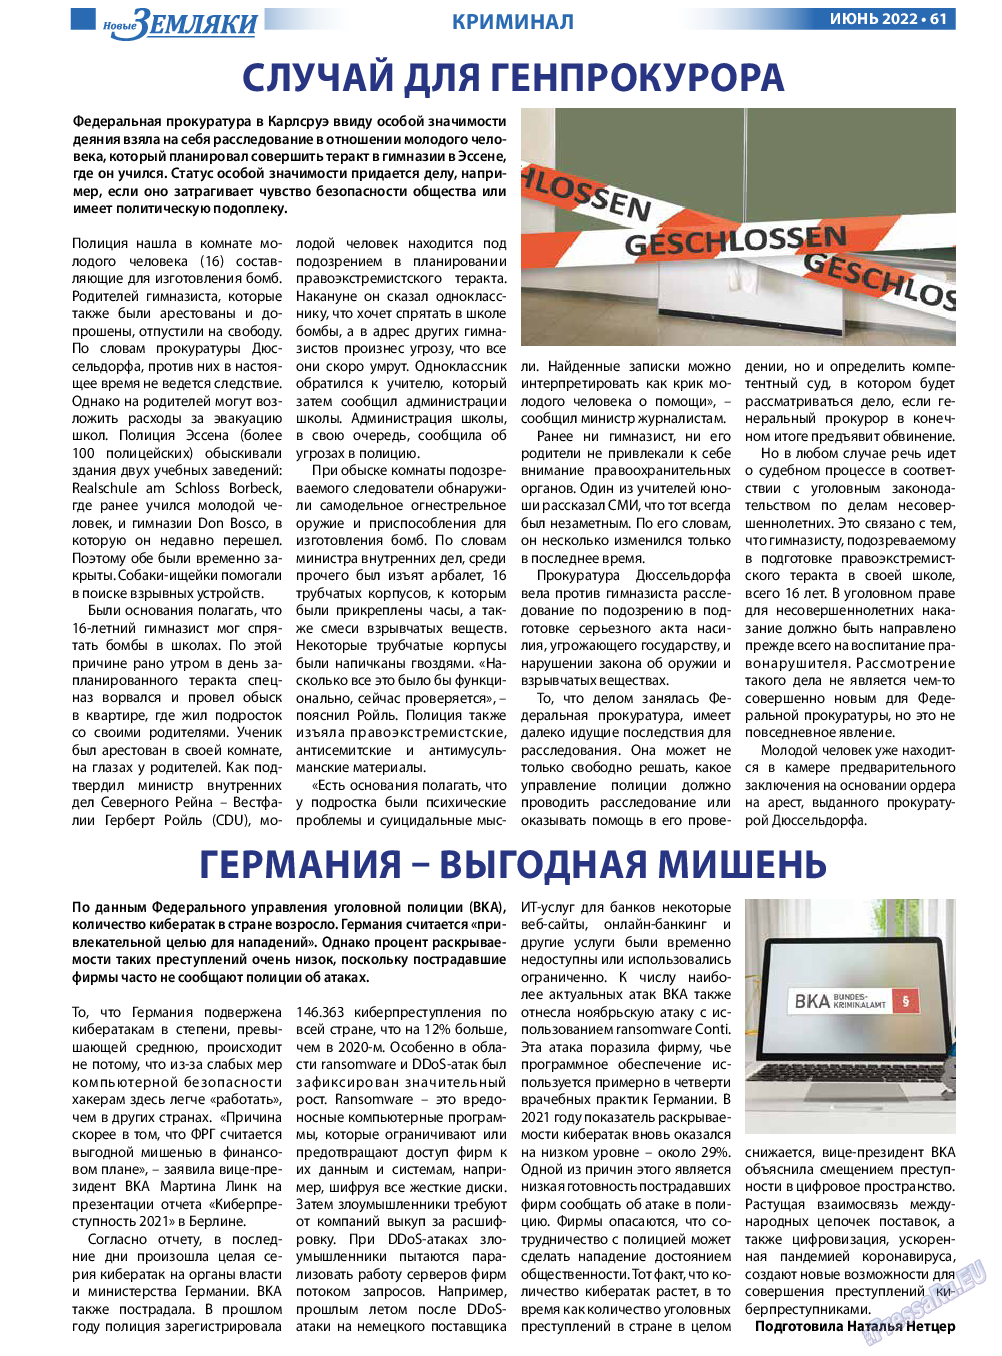 Новые Земляки, газета. 2022 №6 стр.61